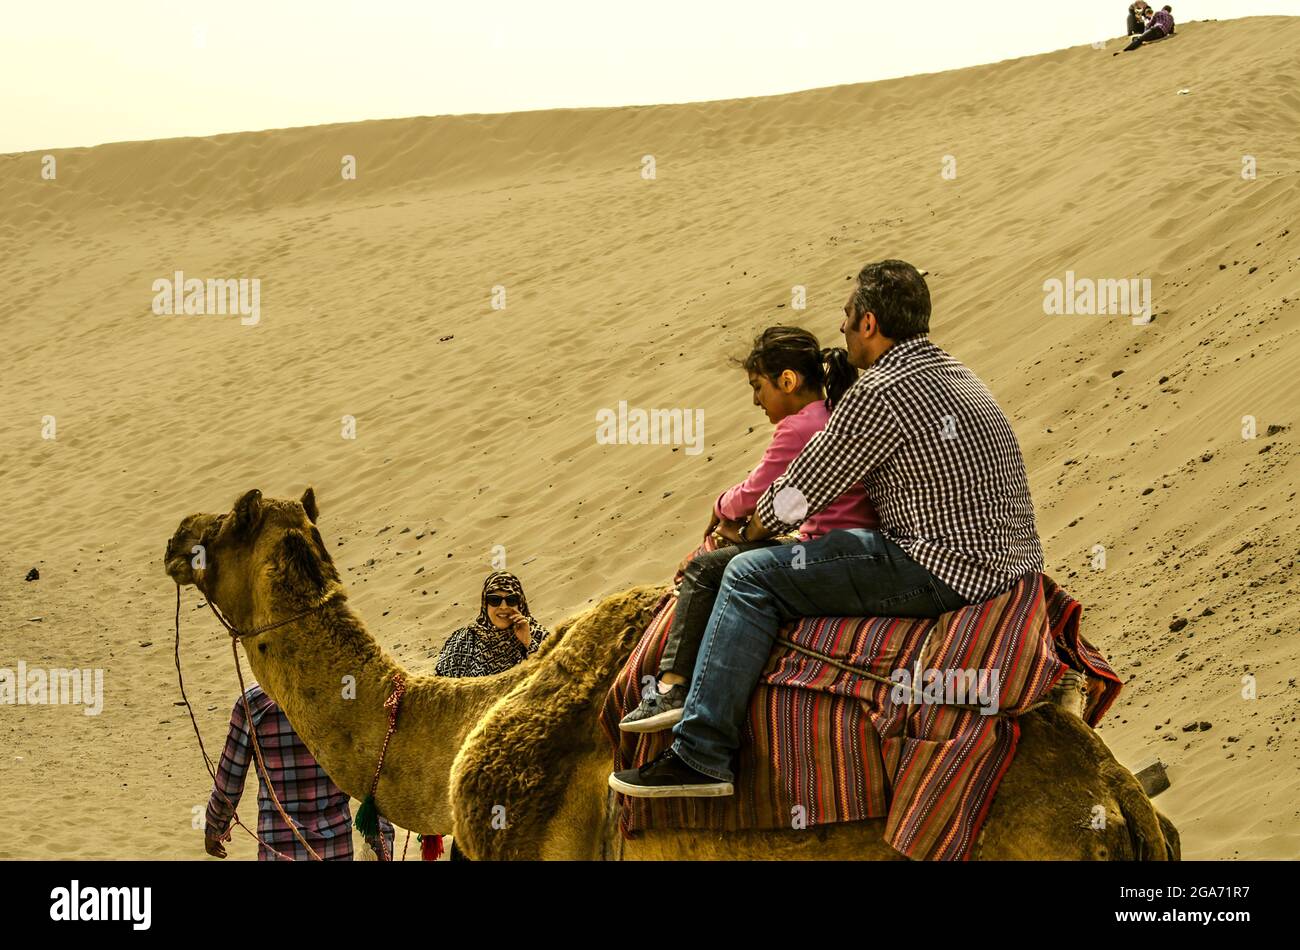 Yazd, désert, Iran, 20 février 2021 : homme avec une petite fille assise sur un chameau recouvert d'un tapis lumineux, accompagné d'un guide et d'une femme qui a fait l'observation Banque D'Images